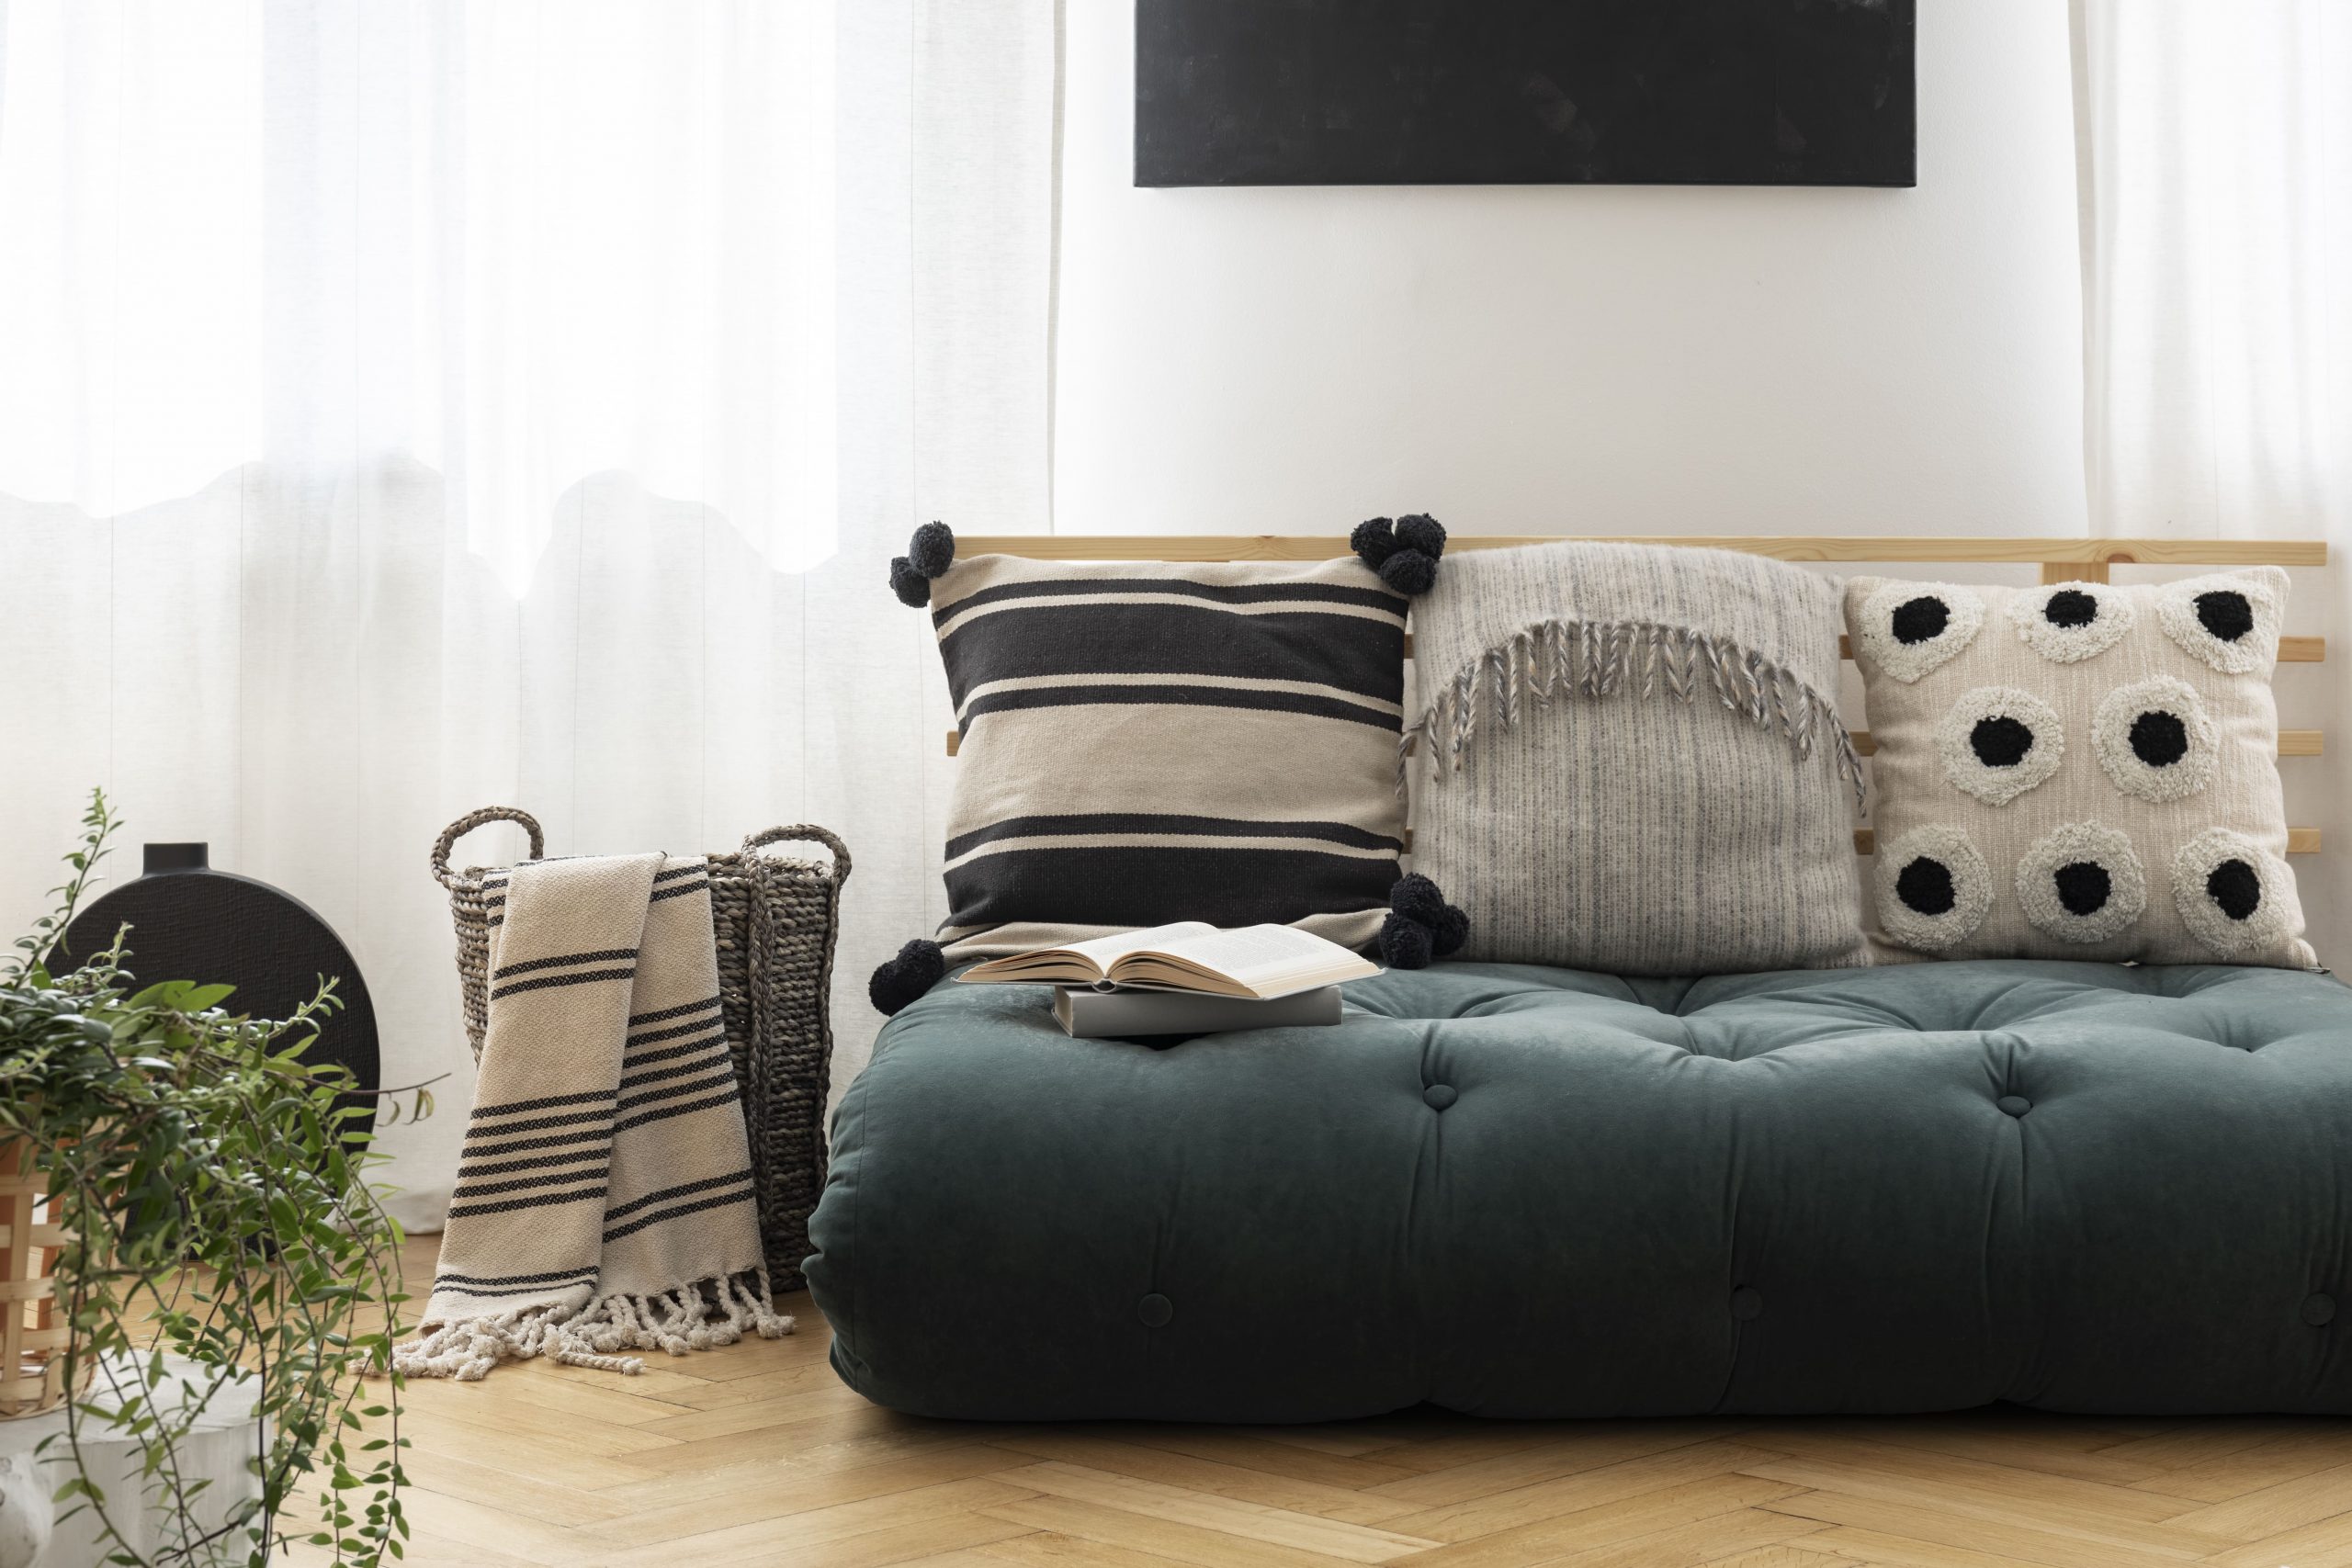 Cómo combinar los cojines para actualizar tu sofá